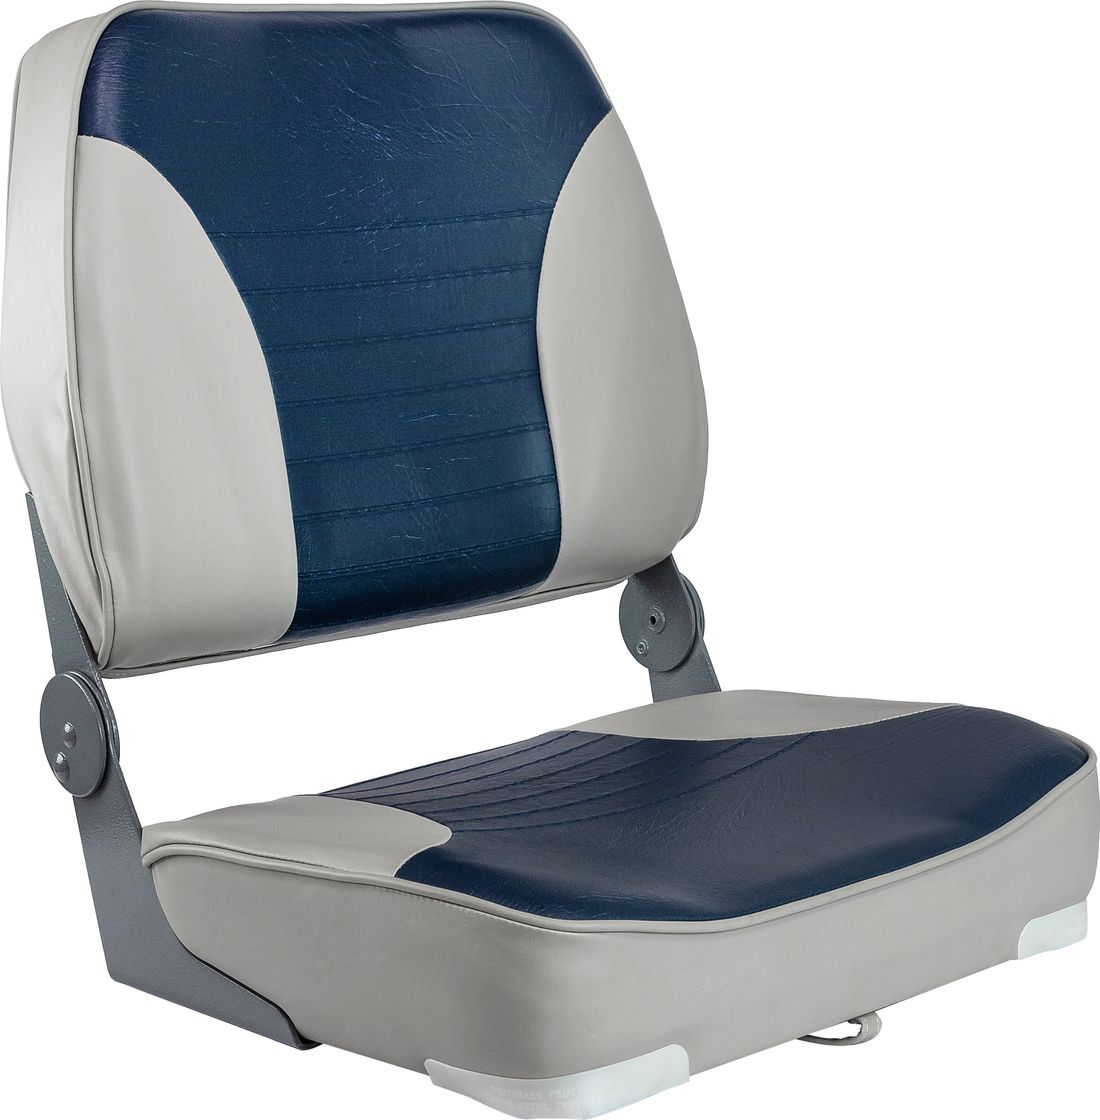 Кресло XXL складное мягкое двухцветное серый/синий 1040691 кресло складное мягкое sport с высокой спинкой синий серый 1040513